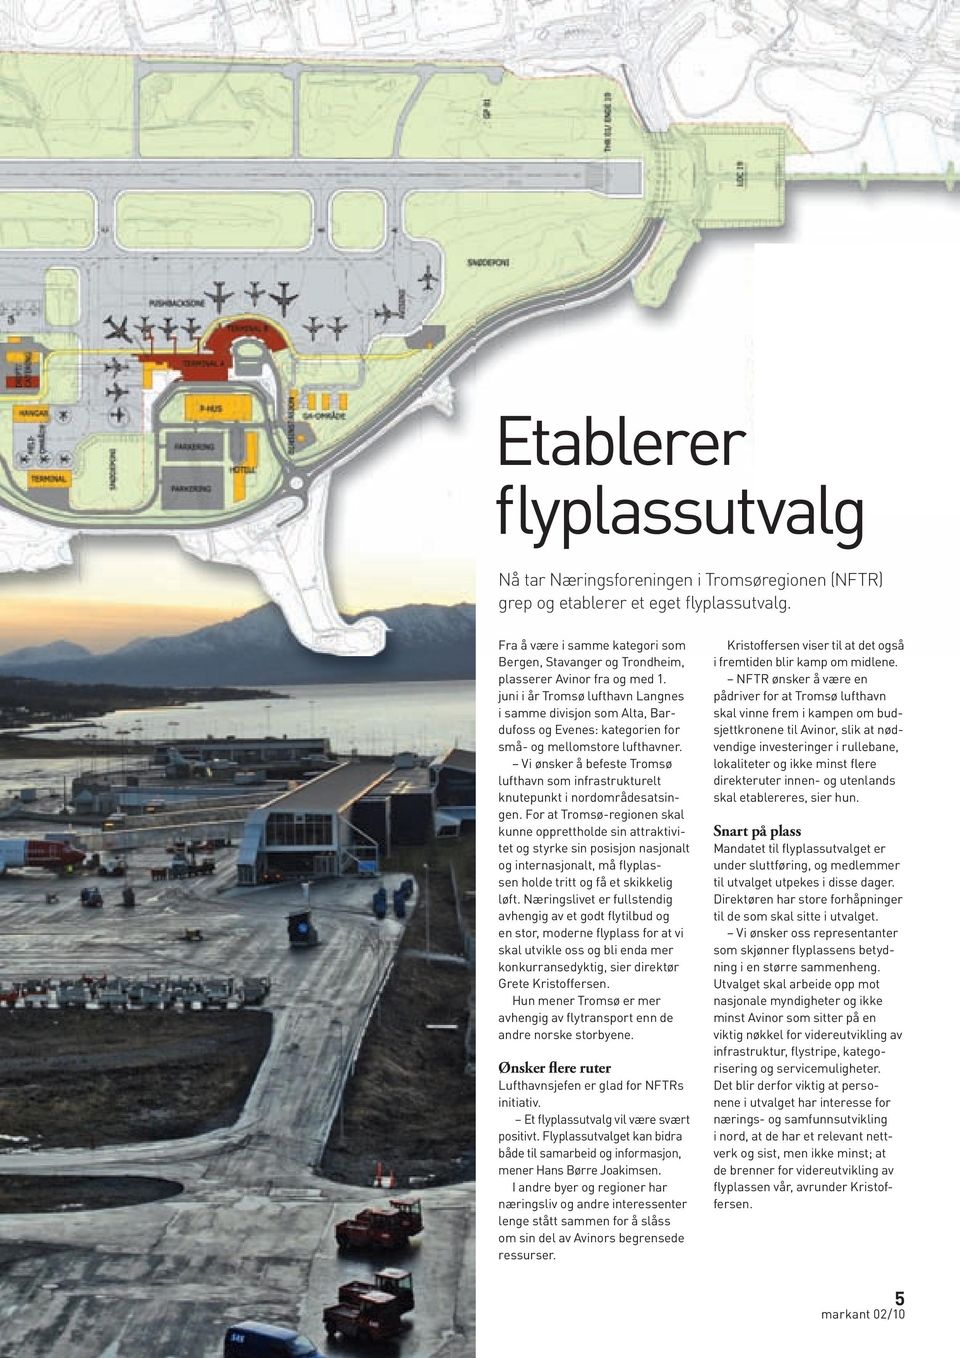 juni i år Tromsø lufthavn langnes i samme divisjon som alta, Bardufoss og Evenes: kategorien for små- og mellomstore lufthavner.